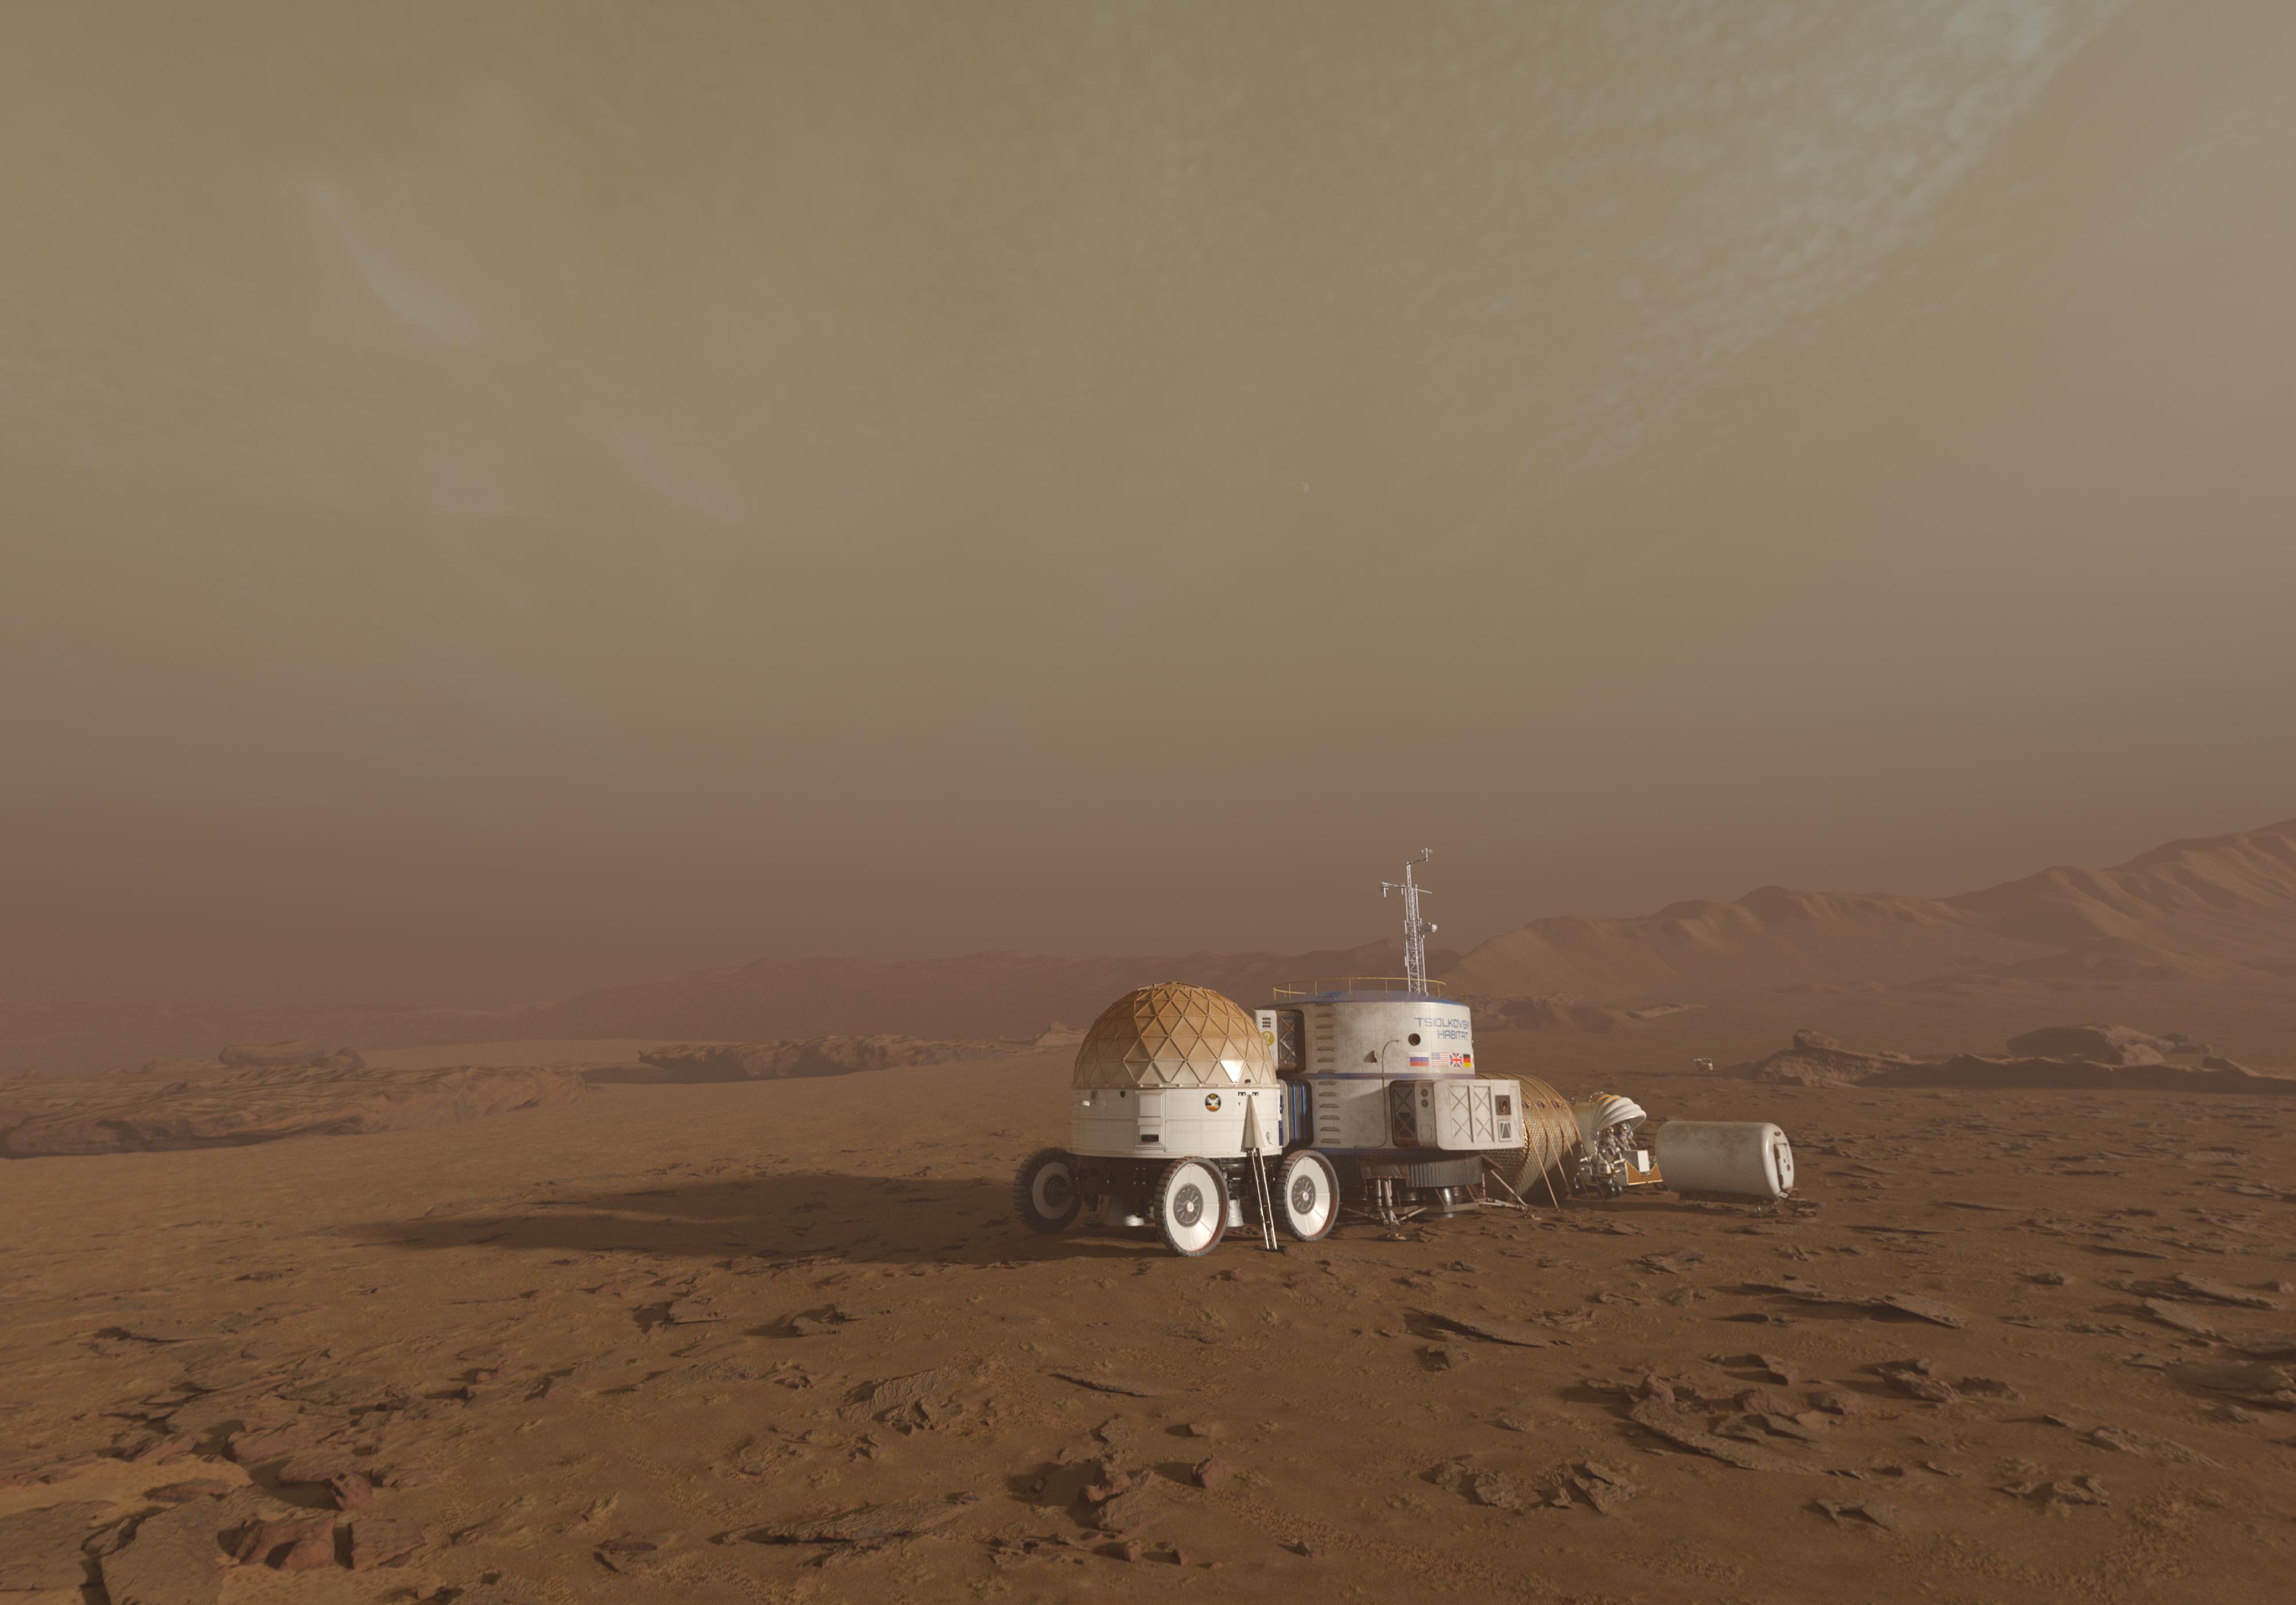 香港太空館天象廳五月一日起放映全新天象節目《火星千日行》，讓觀眾踏上虛擬旅程，跟隨太空人展開為期1,001日的首次載人登陸火星虛構任務，一同探索這紅色行星。圖示節目中太空人在火星上的基地，它由多個組件組建而成。居住艙的頂部設置了一個氣象站，用作監測火星上的大氣狀況。（圖片來源：© Mirage3D）